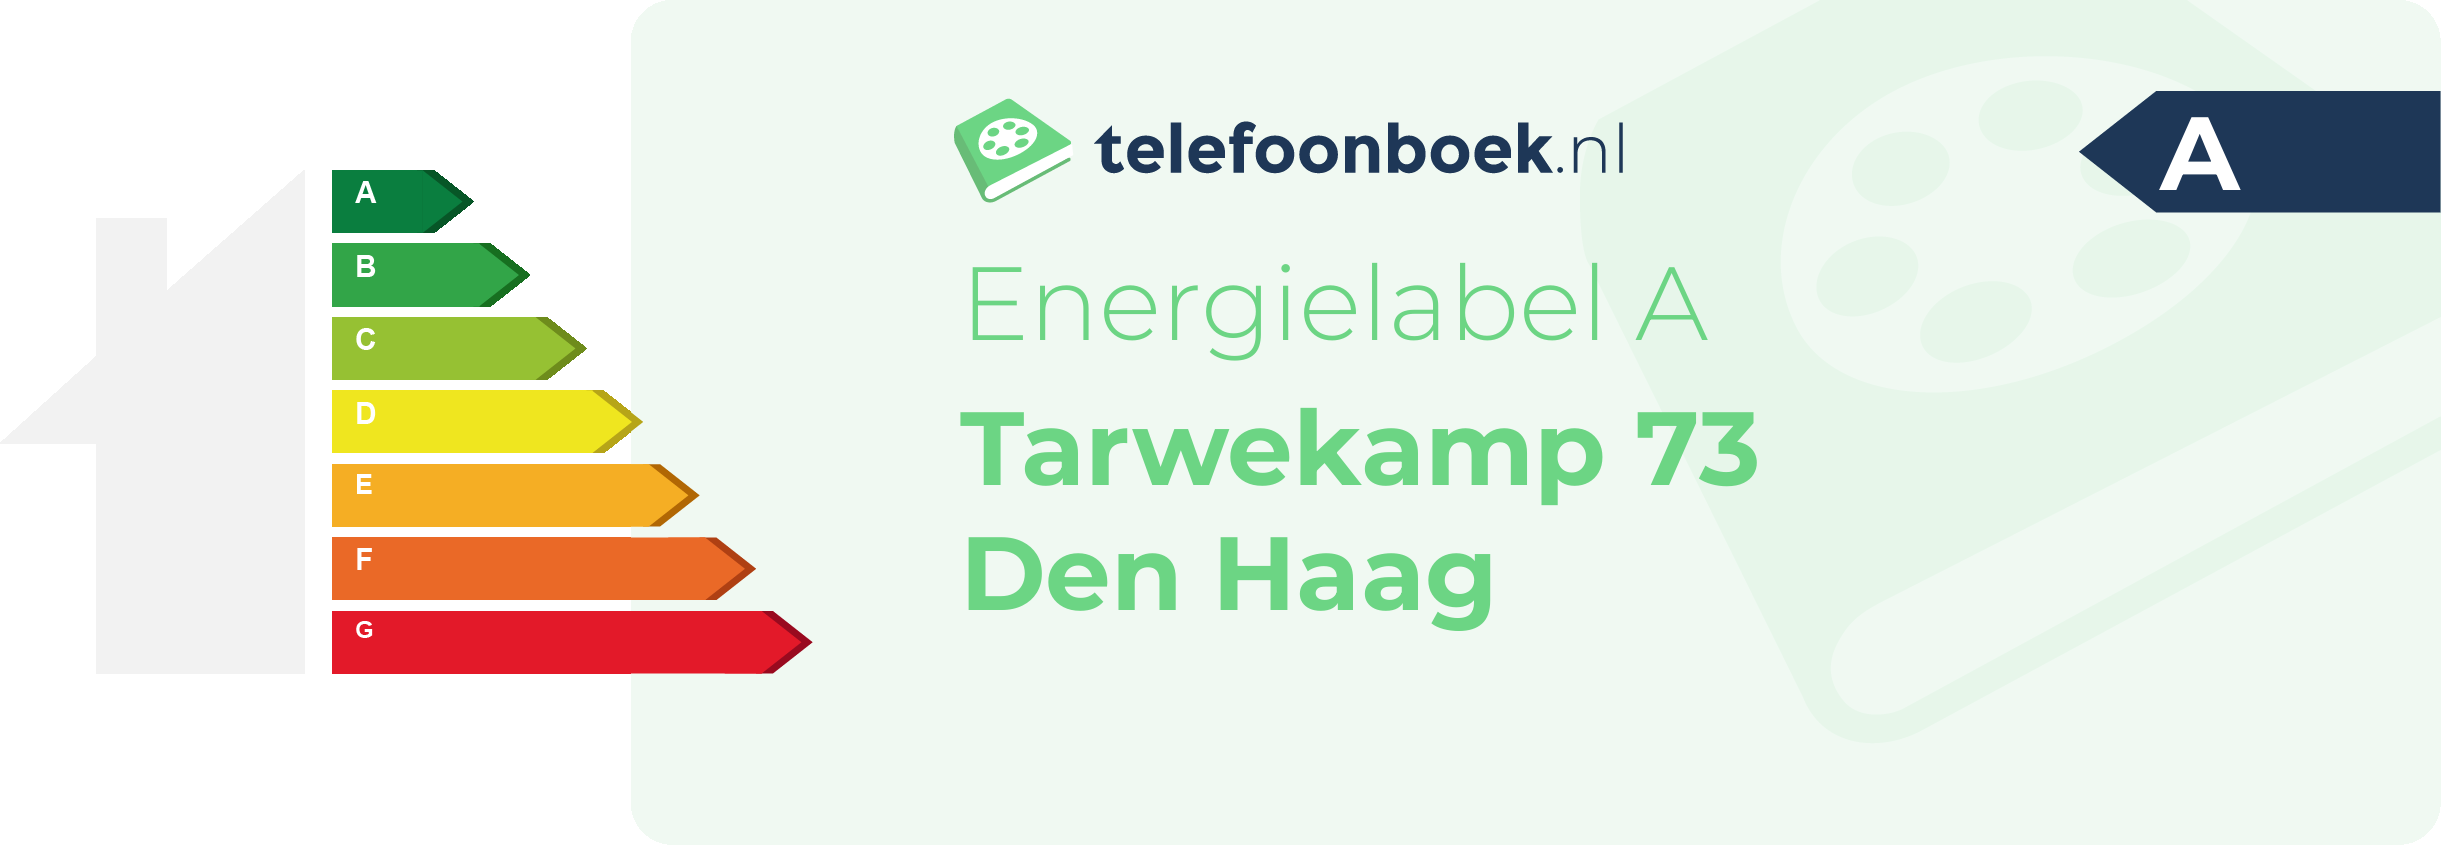 Energielabel Tarwekamp 73 Den Haag